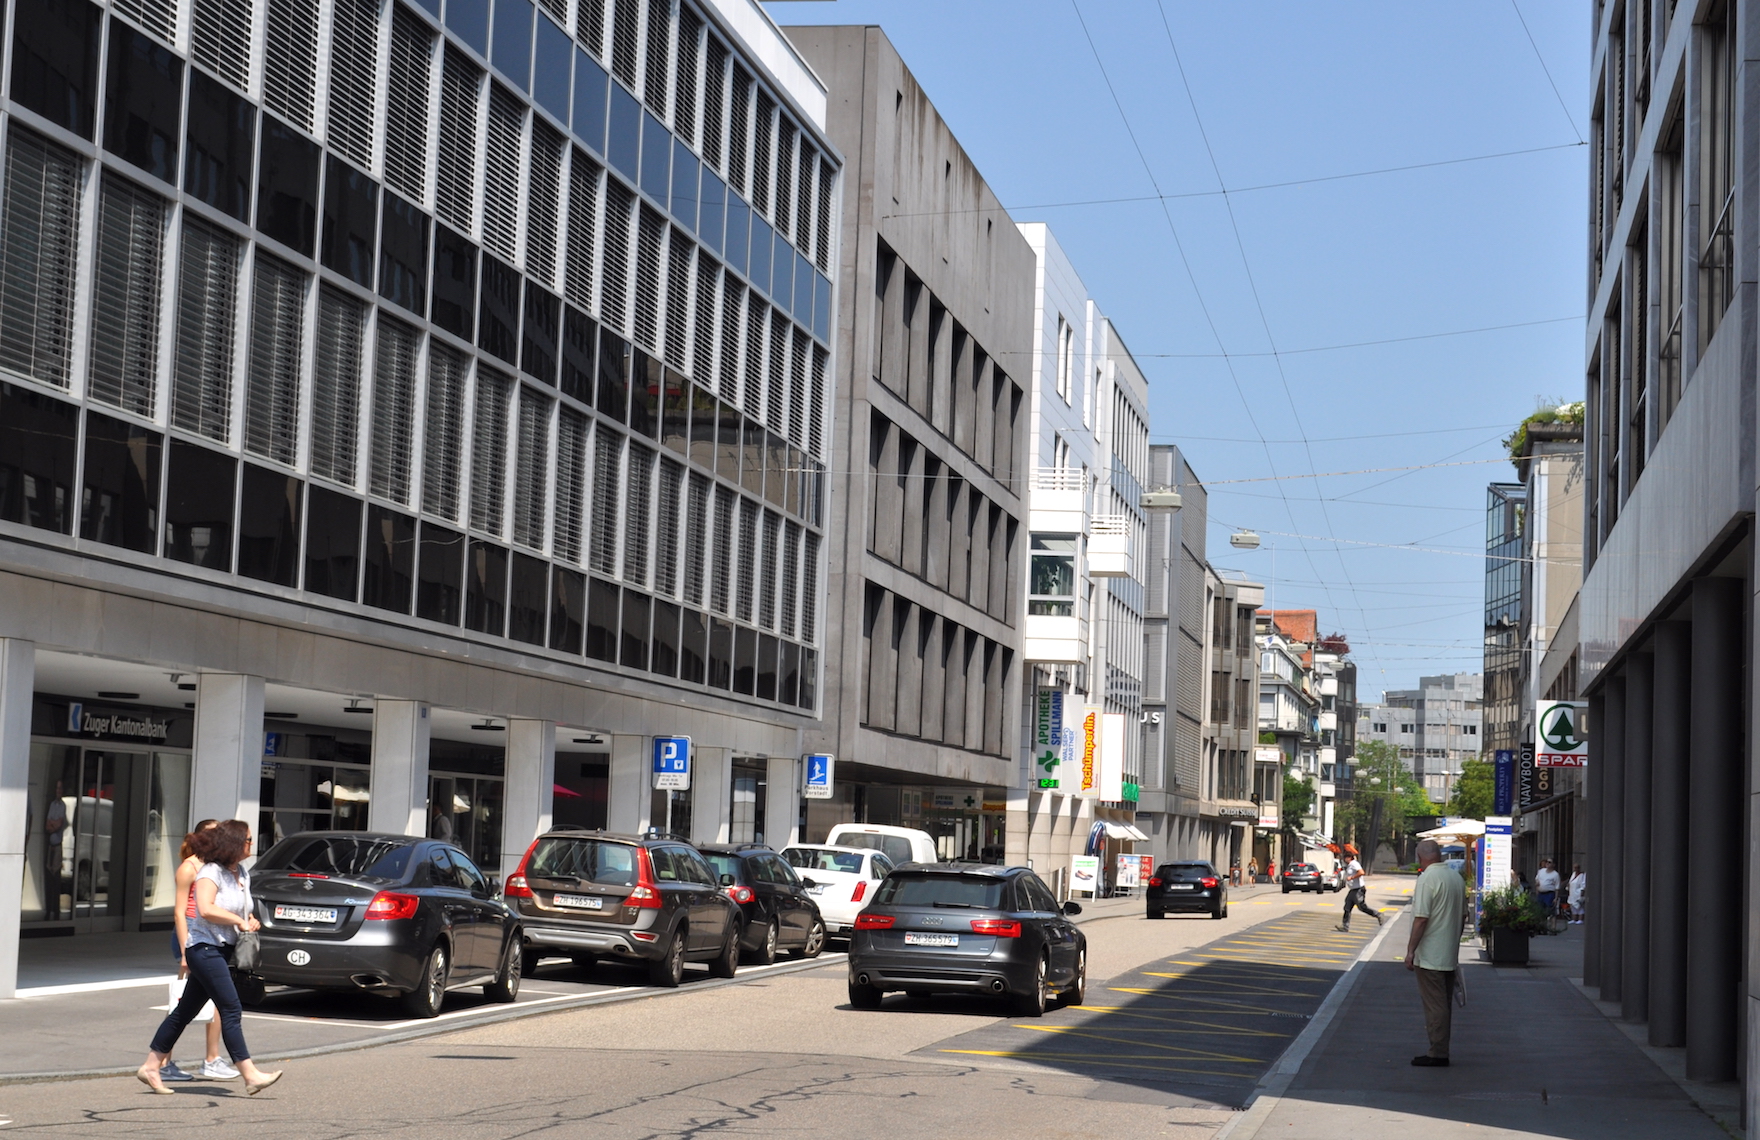 Bahnhofstrasse in Zug: Ohne hinderliches Grün kann man die zeitgenössische Architektur geniessen.